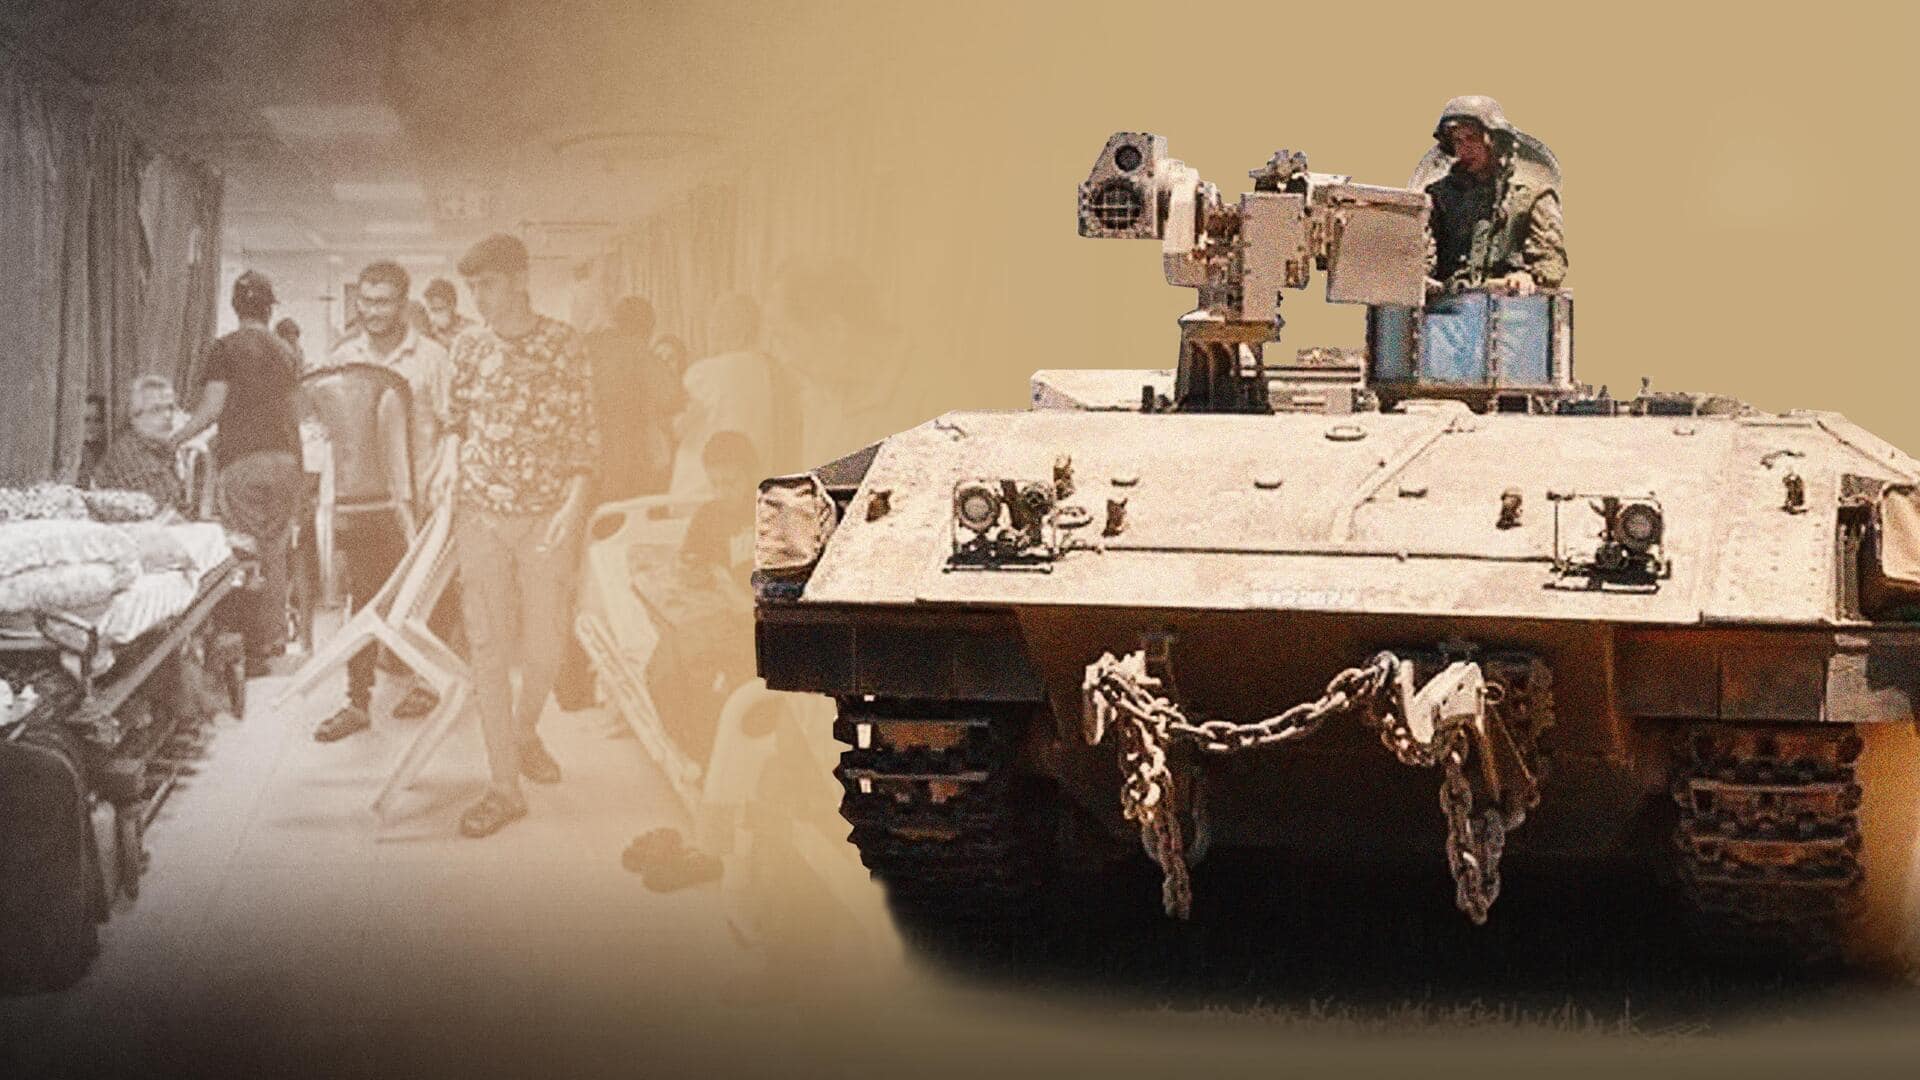 इजरायली सेना ने अल-शिफा अस्पताल पर बोला धावा, नवजात बच्चों समेत 2,300 लोग अंदर फंसे